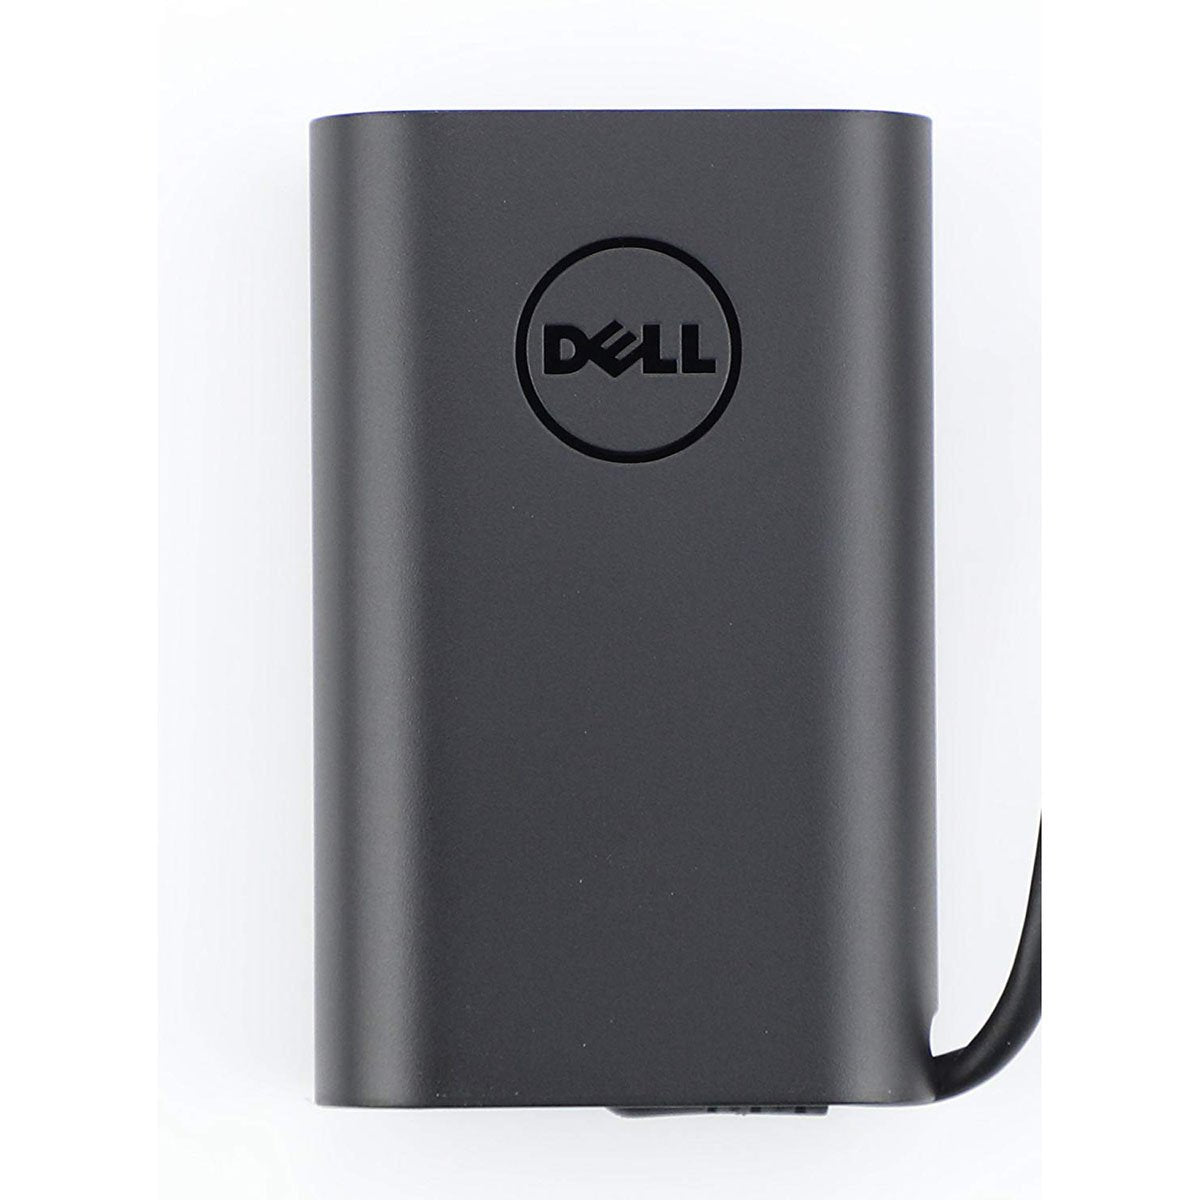 Dell ओरिजिनल 45W 20V USB टाइप C लैपटॉप चार्जर अडैप्टर P13YF के लिए पावर कॉर्ड के साथ